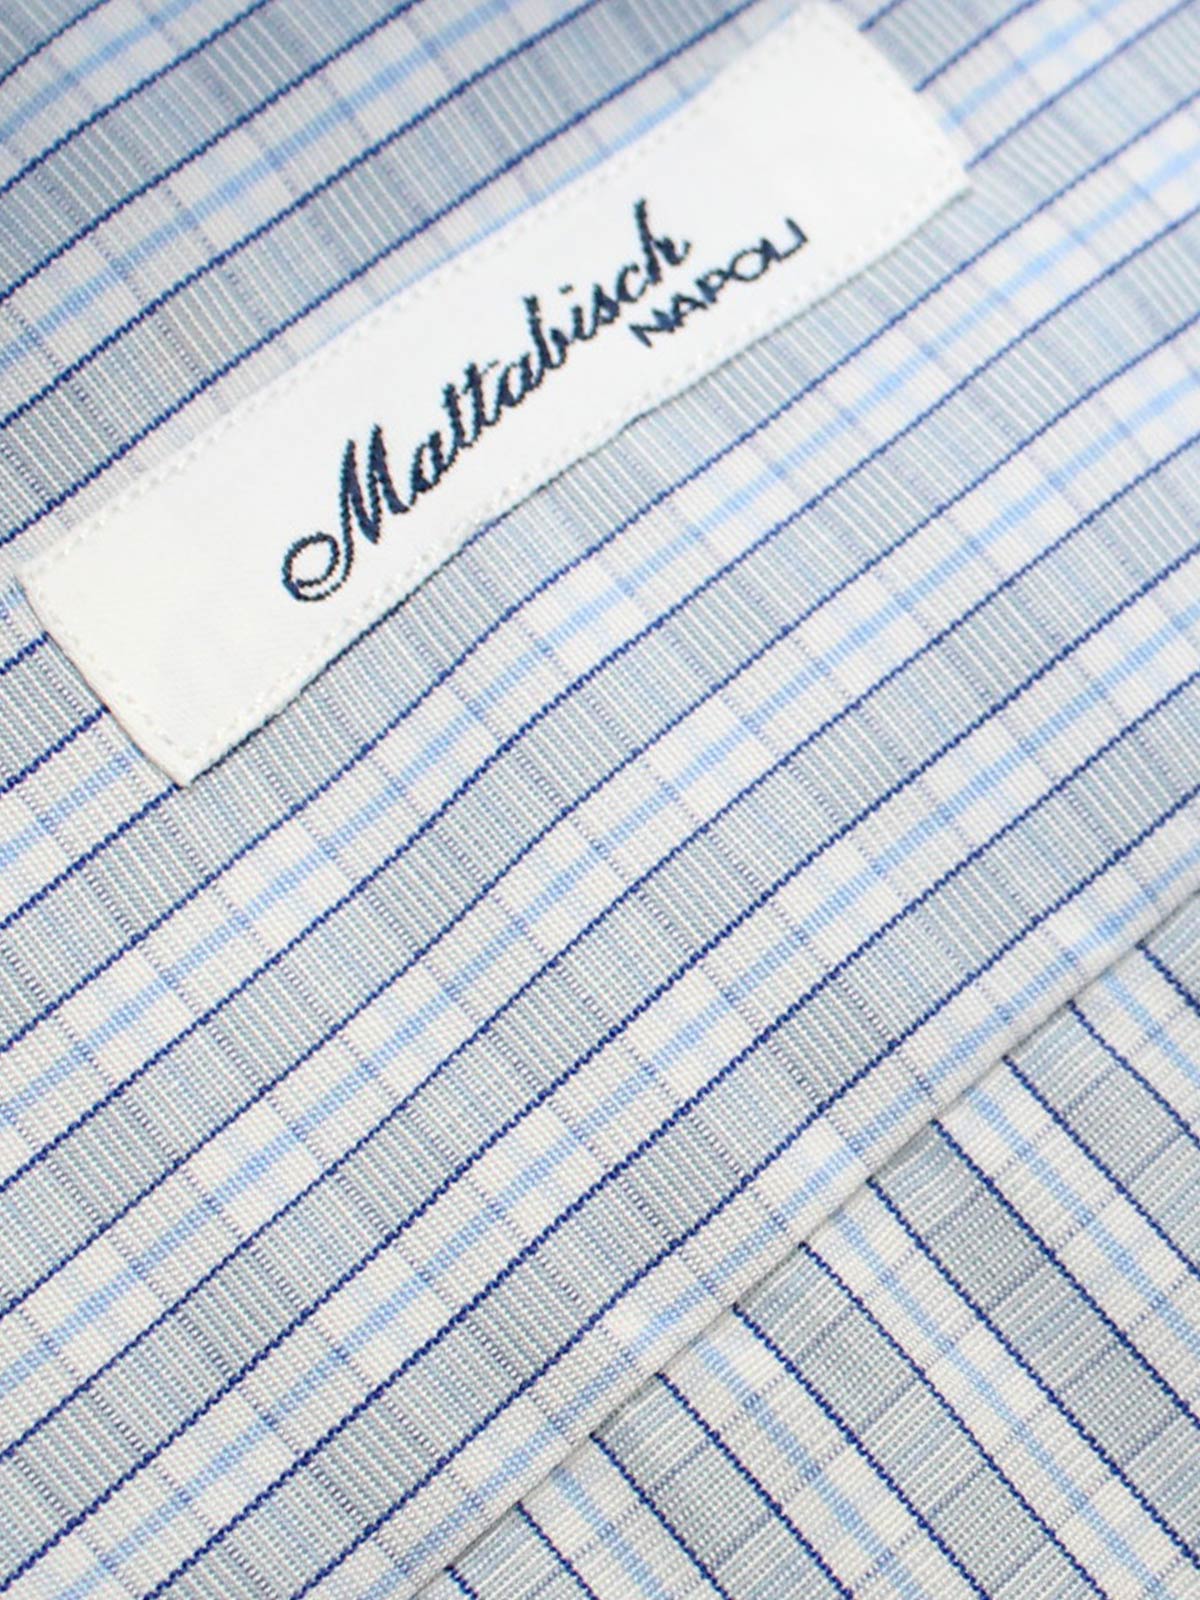 Mattabisch Shirt White Blue Navy Gray Check 